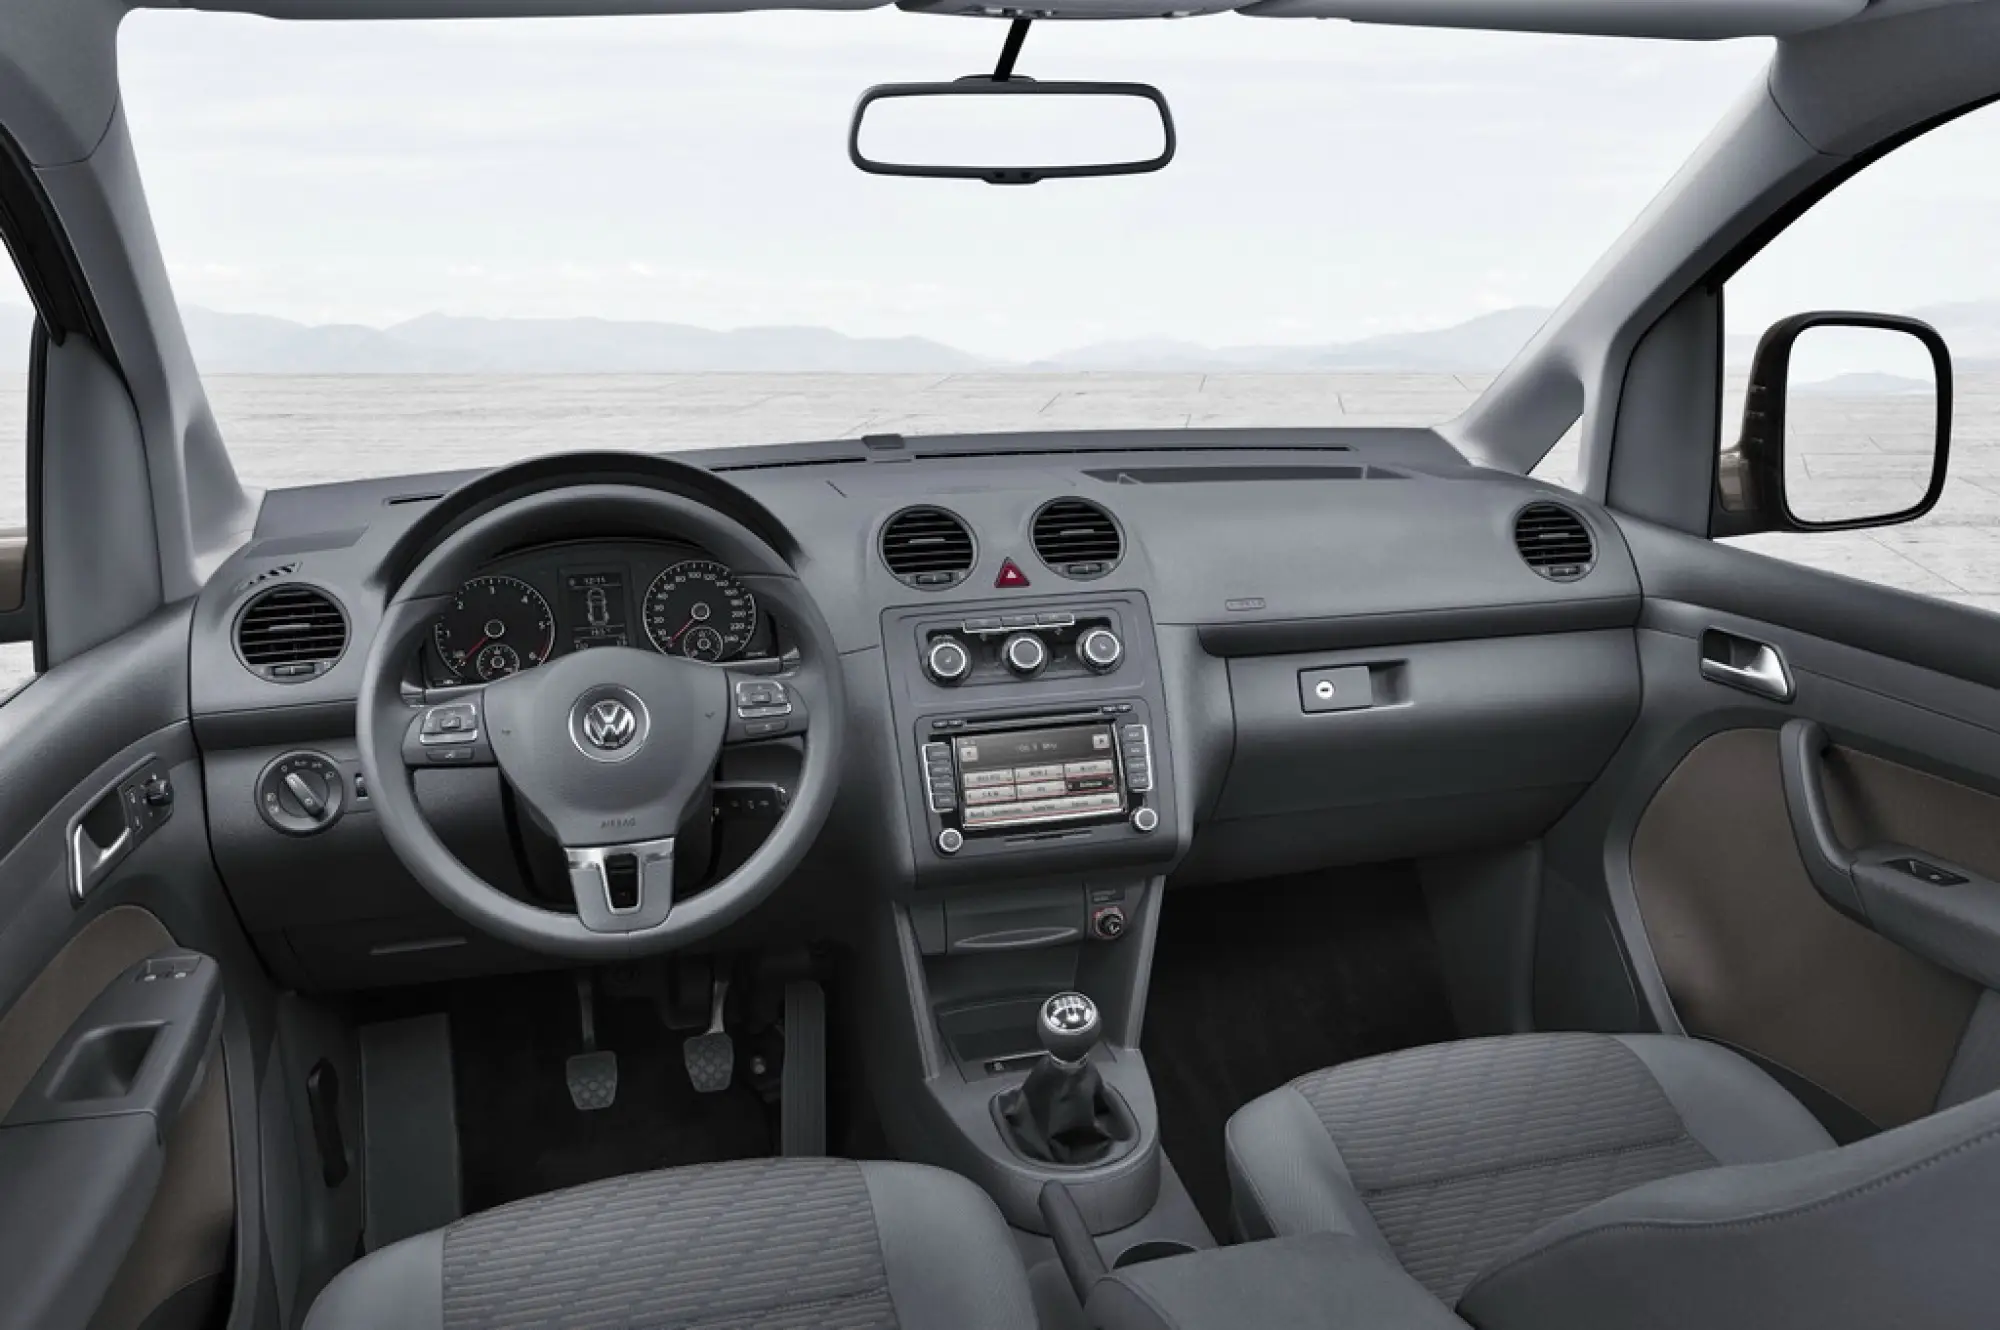 Volkswagen Caddy 2011 - 6